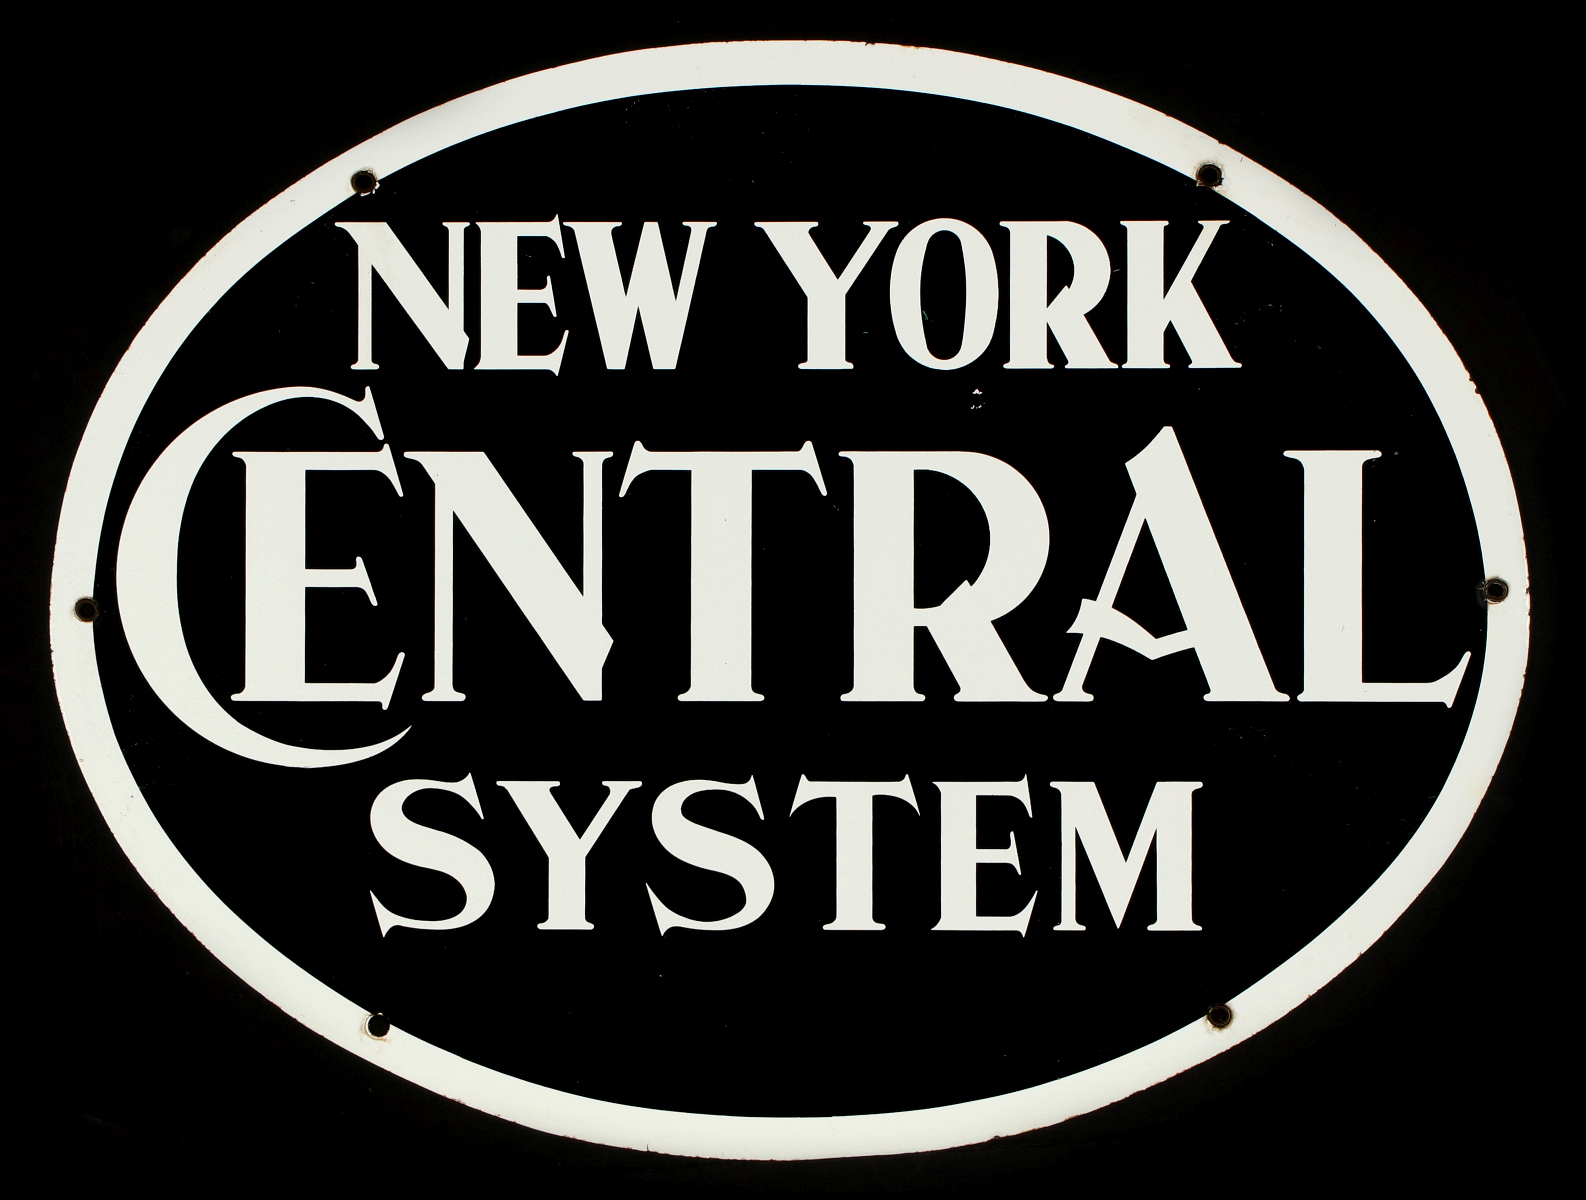 A GOOD ORIGINAL NEW YORK CENTRAL PORCELAIN ENAMEL SIGN